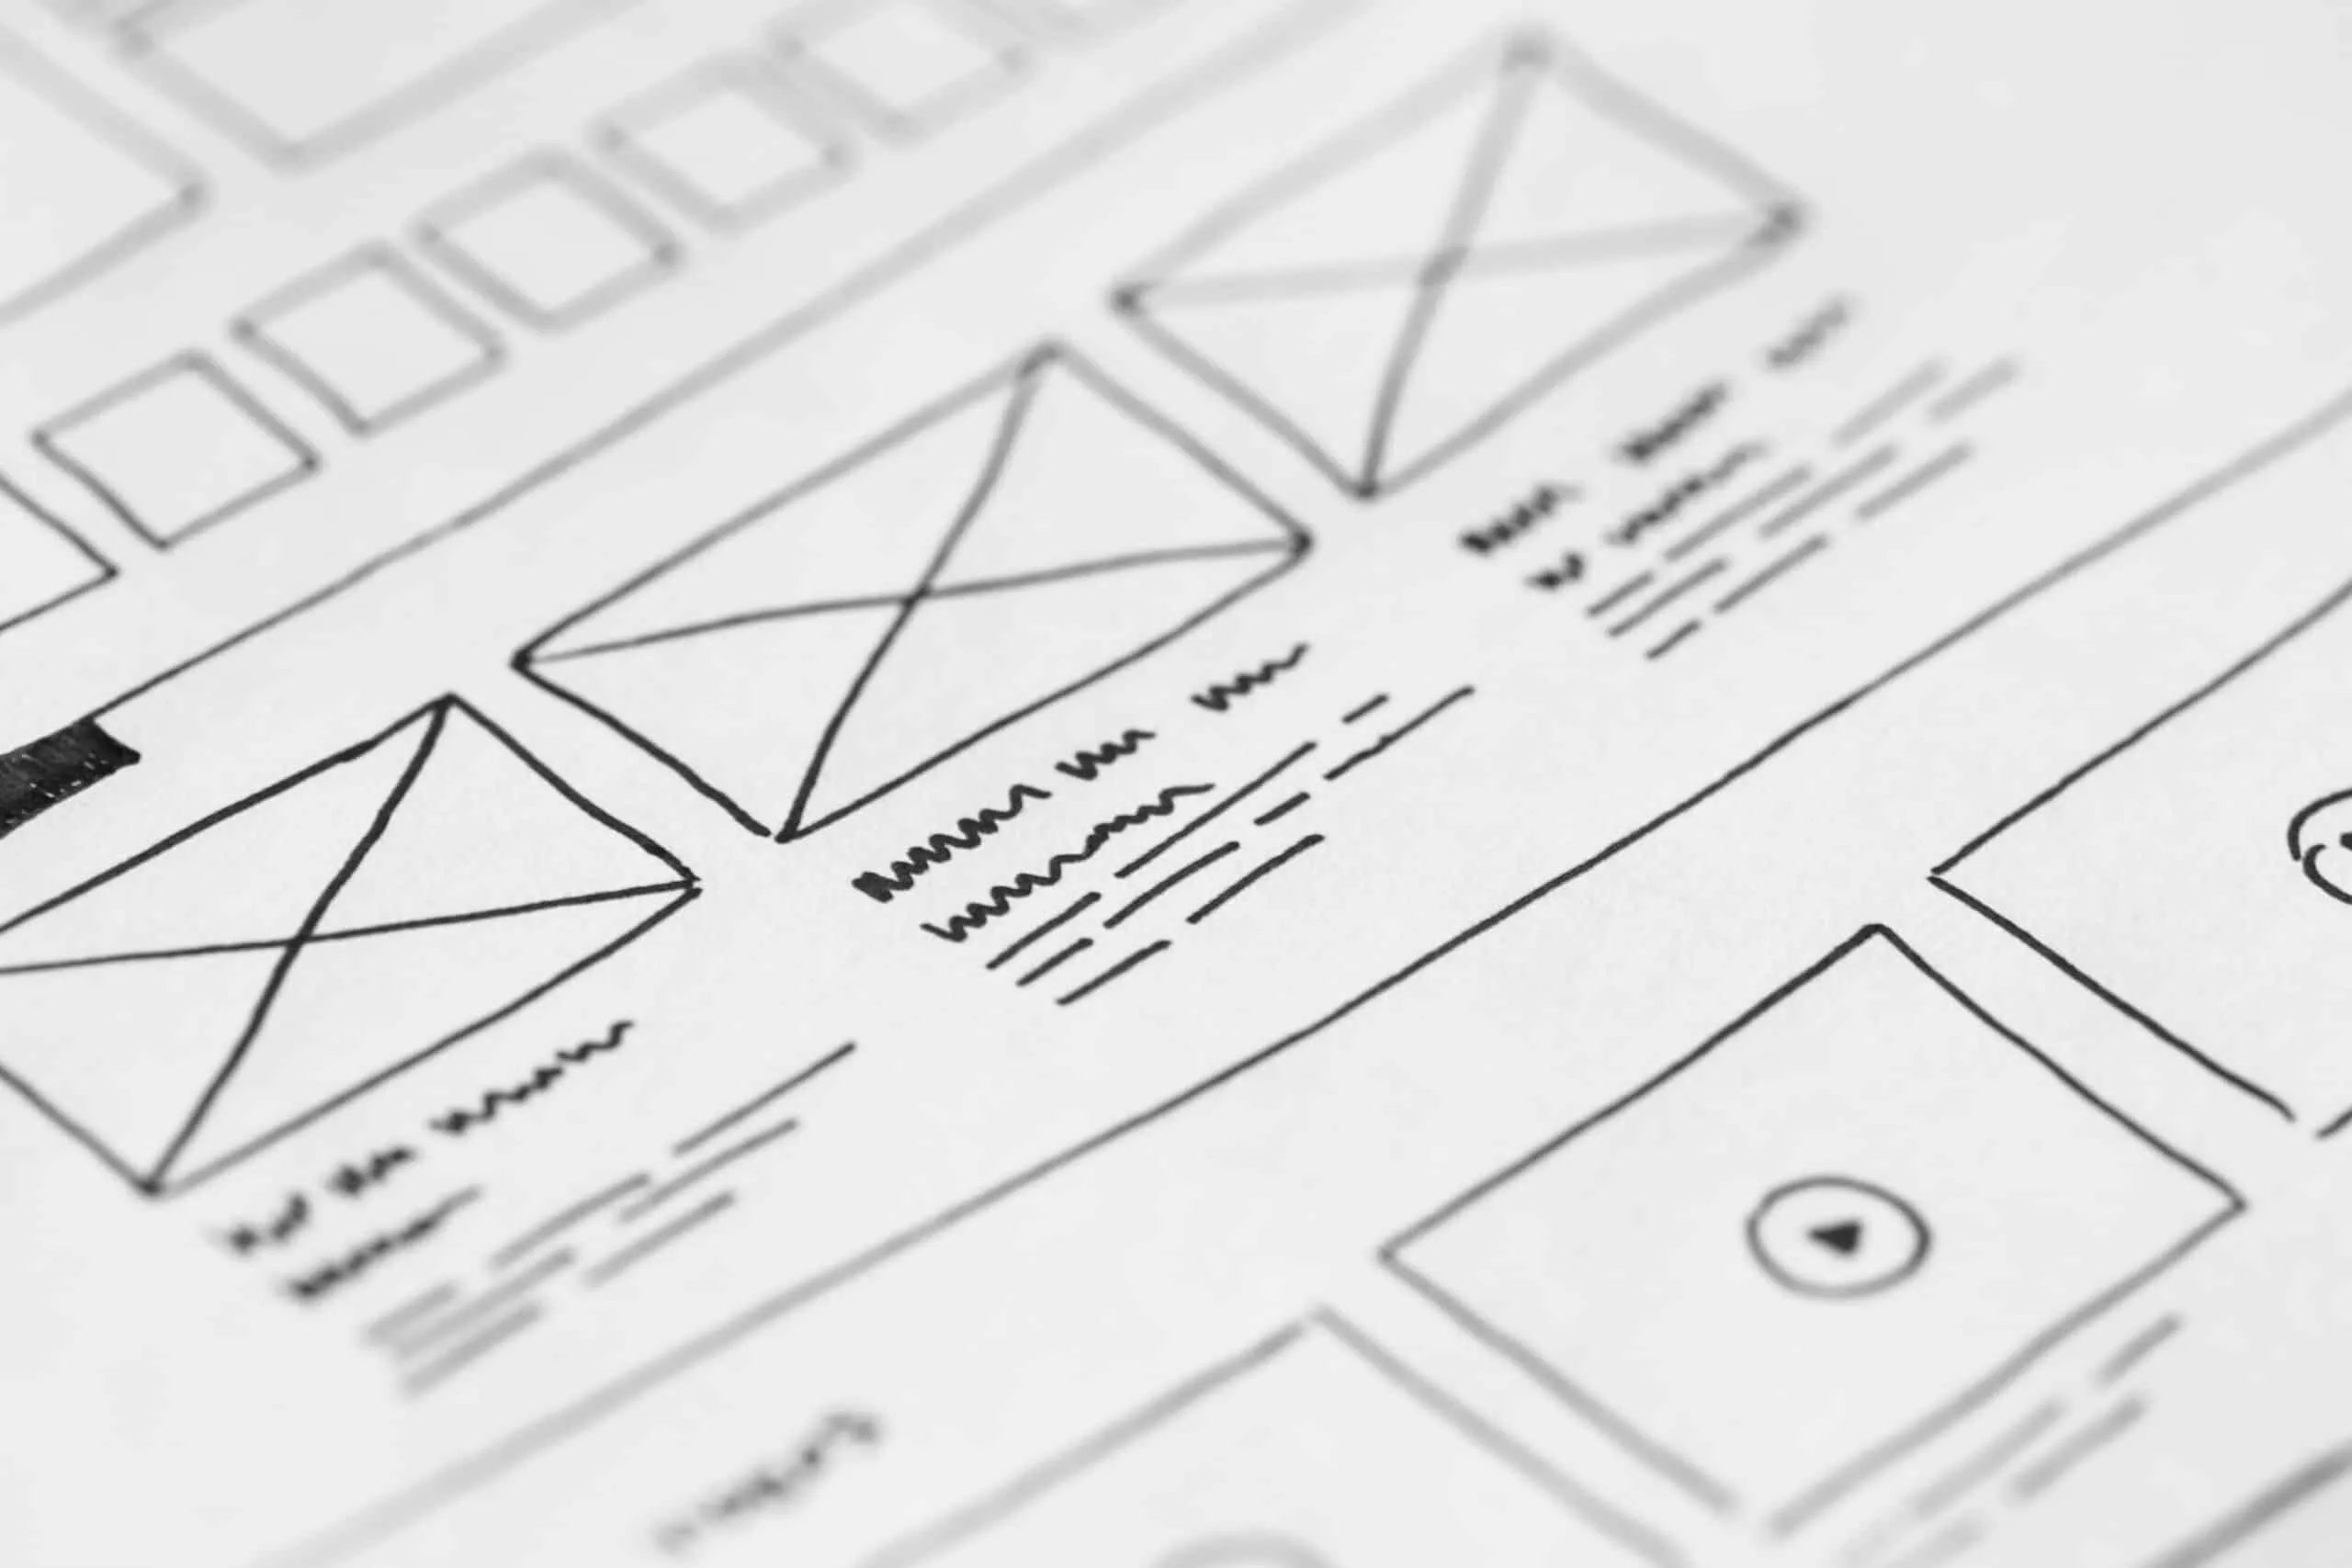 Website design sketches on paper